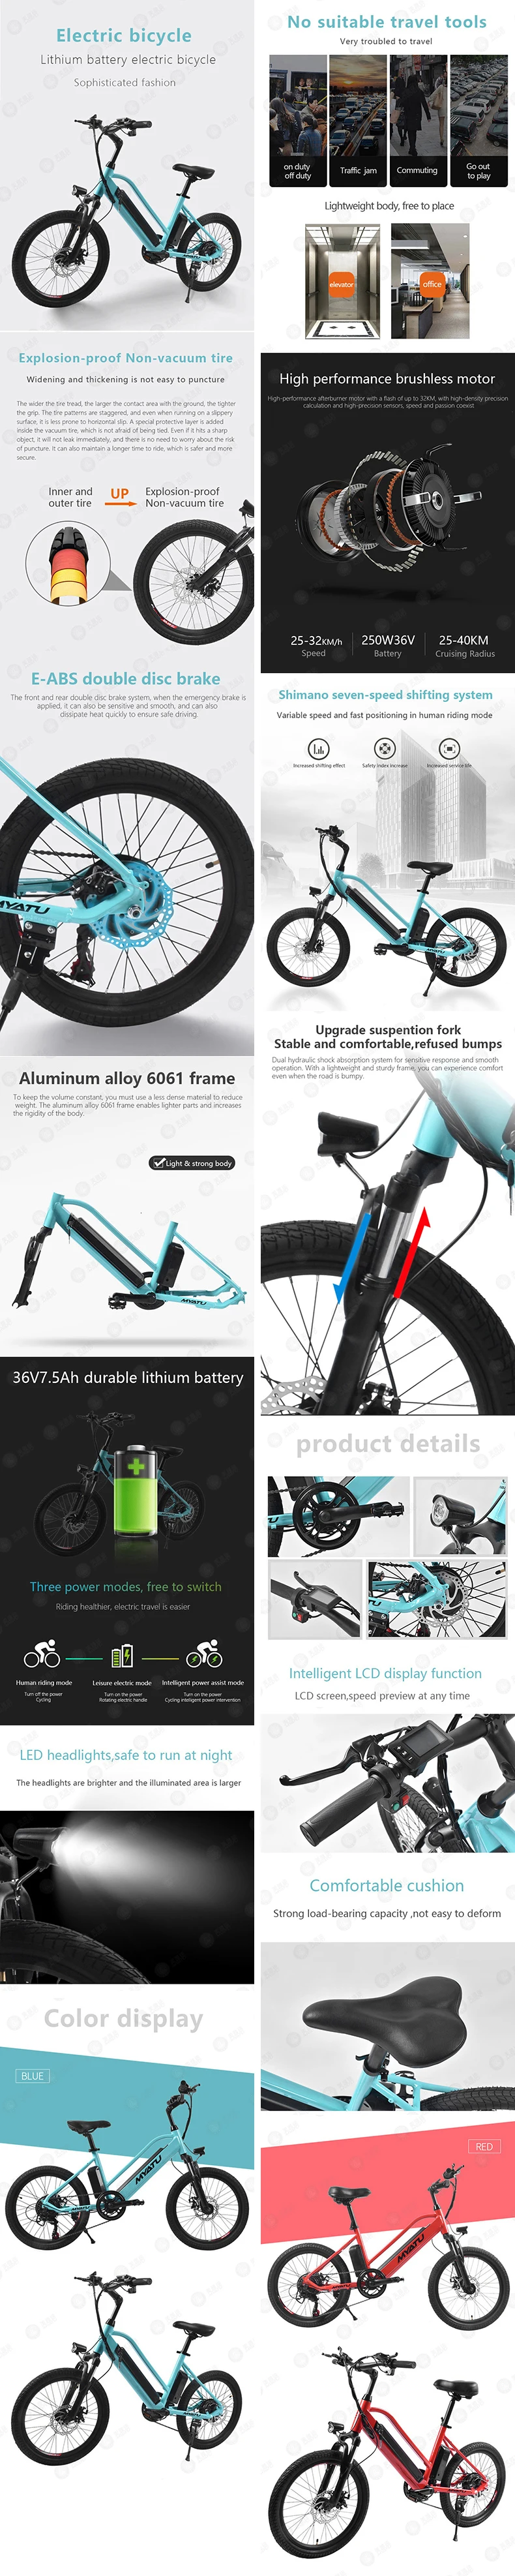 [MYATU] Электрический велосипед для взрослых 20/26 дюймов Алюминий складной e-Электрический велосипед мощный Батарея горный велосипед, фара для электровелосипеда в городе Байк, способный преодолевать Броды